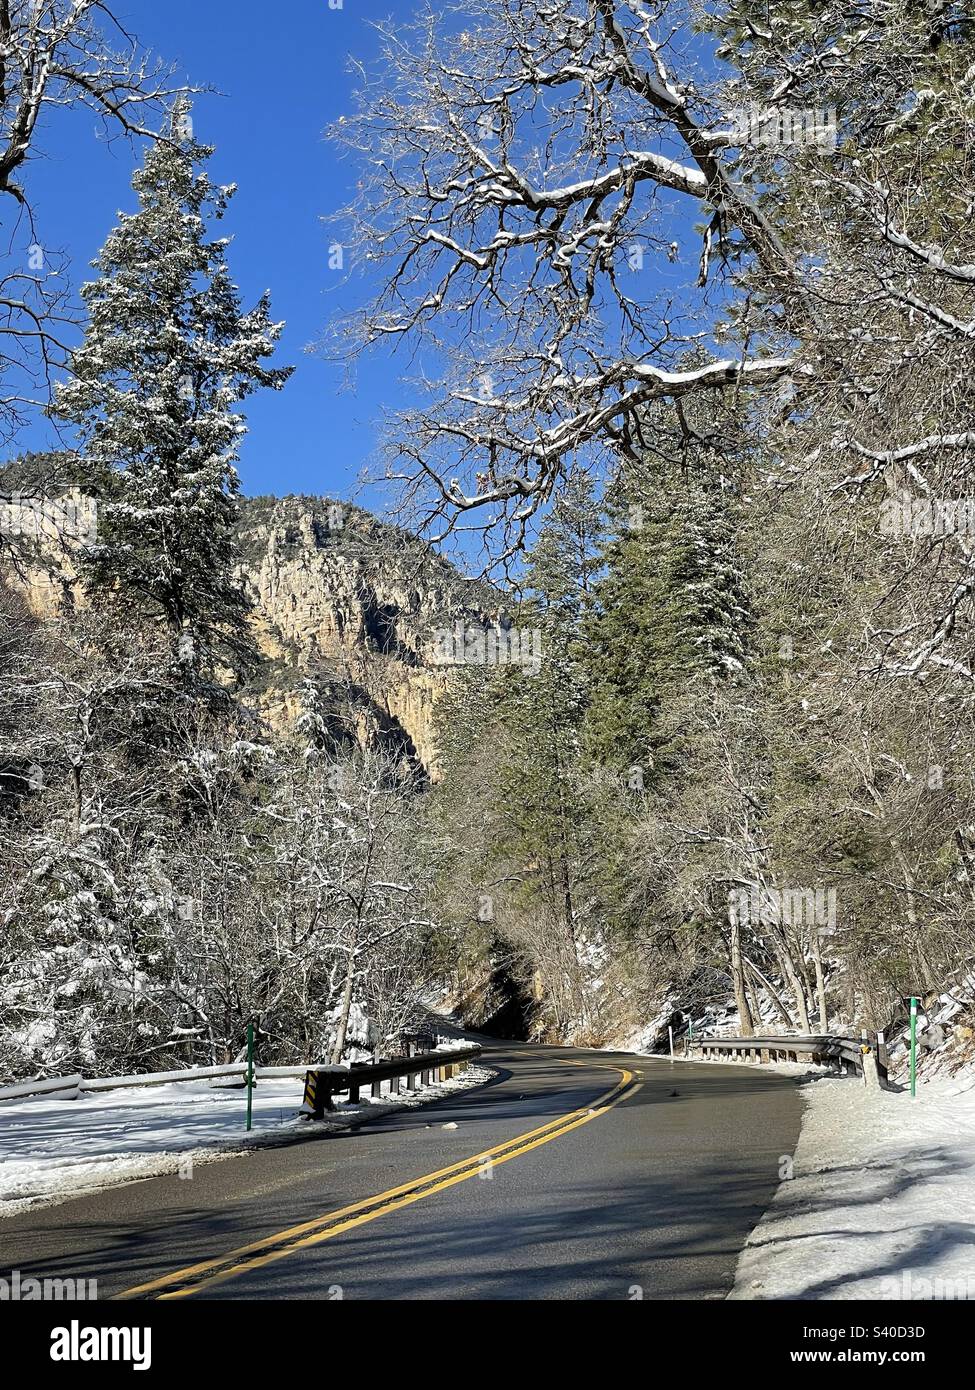 Winter Wonderland, Scenic Highway, 89A, Sedona, Arizona, Canyon del ruscello di quercia, prima nevicata, pinete innevate, cielo blu brillante, sole brillante su rami ghiacciati, vista nord, scogliere rocciose Foto Stock